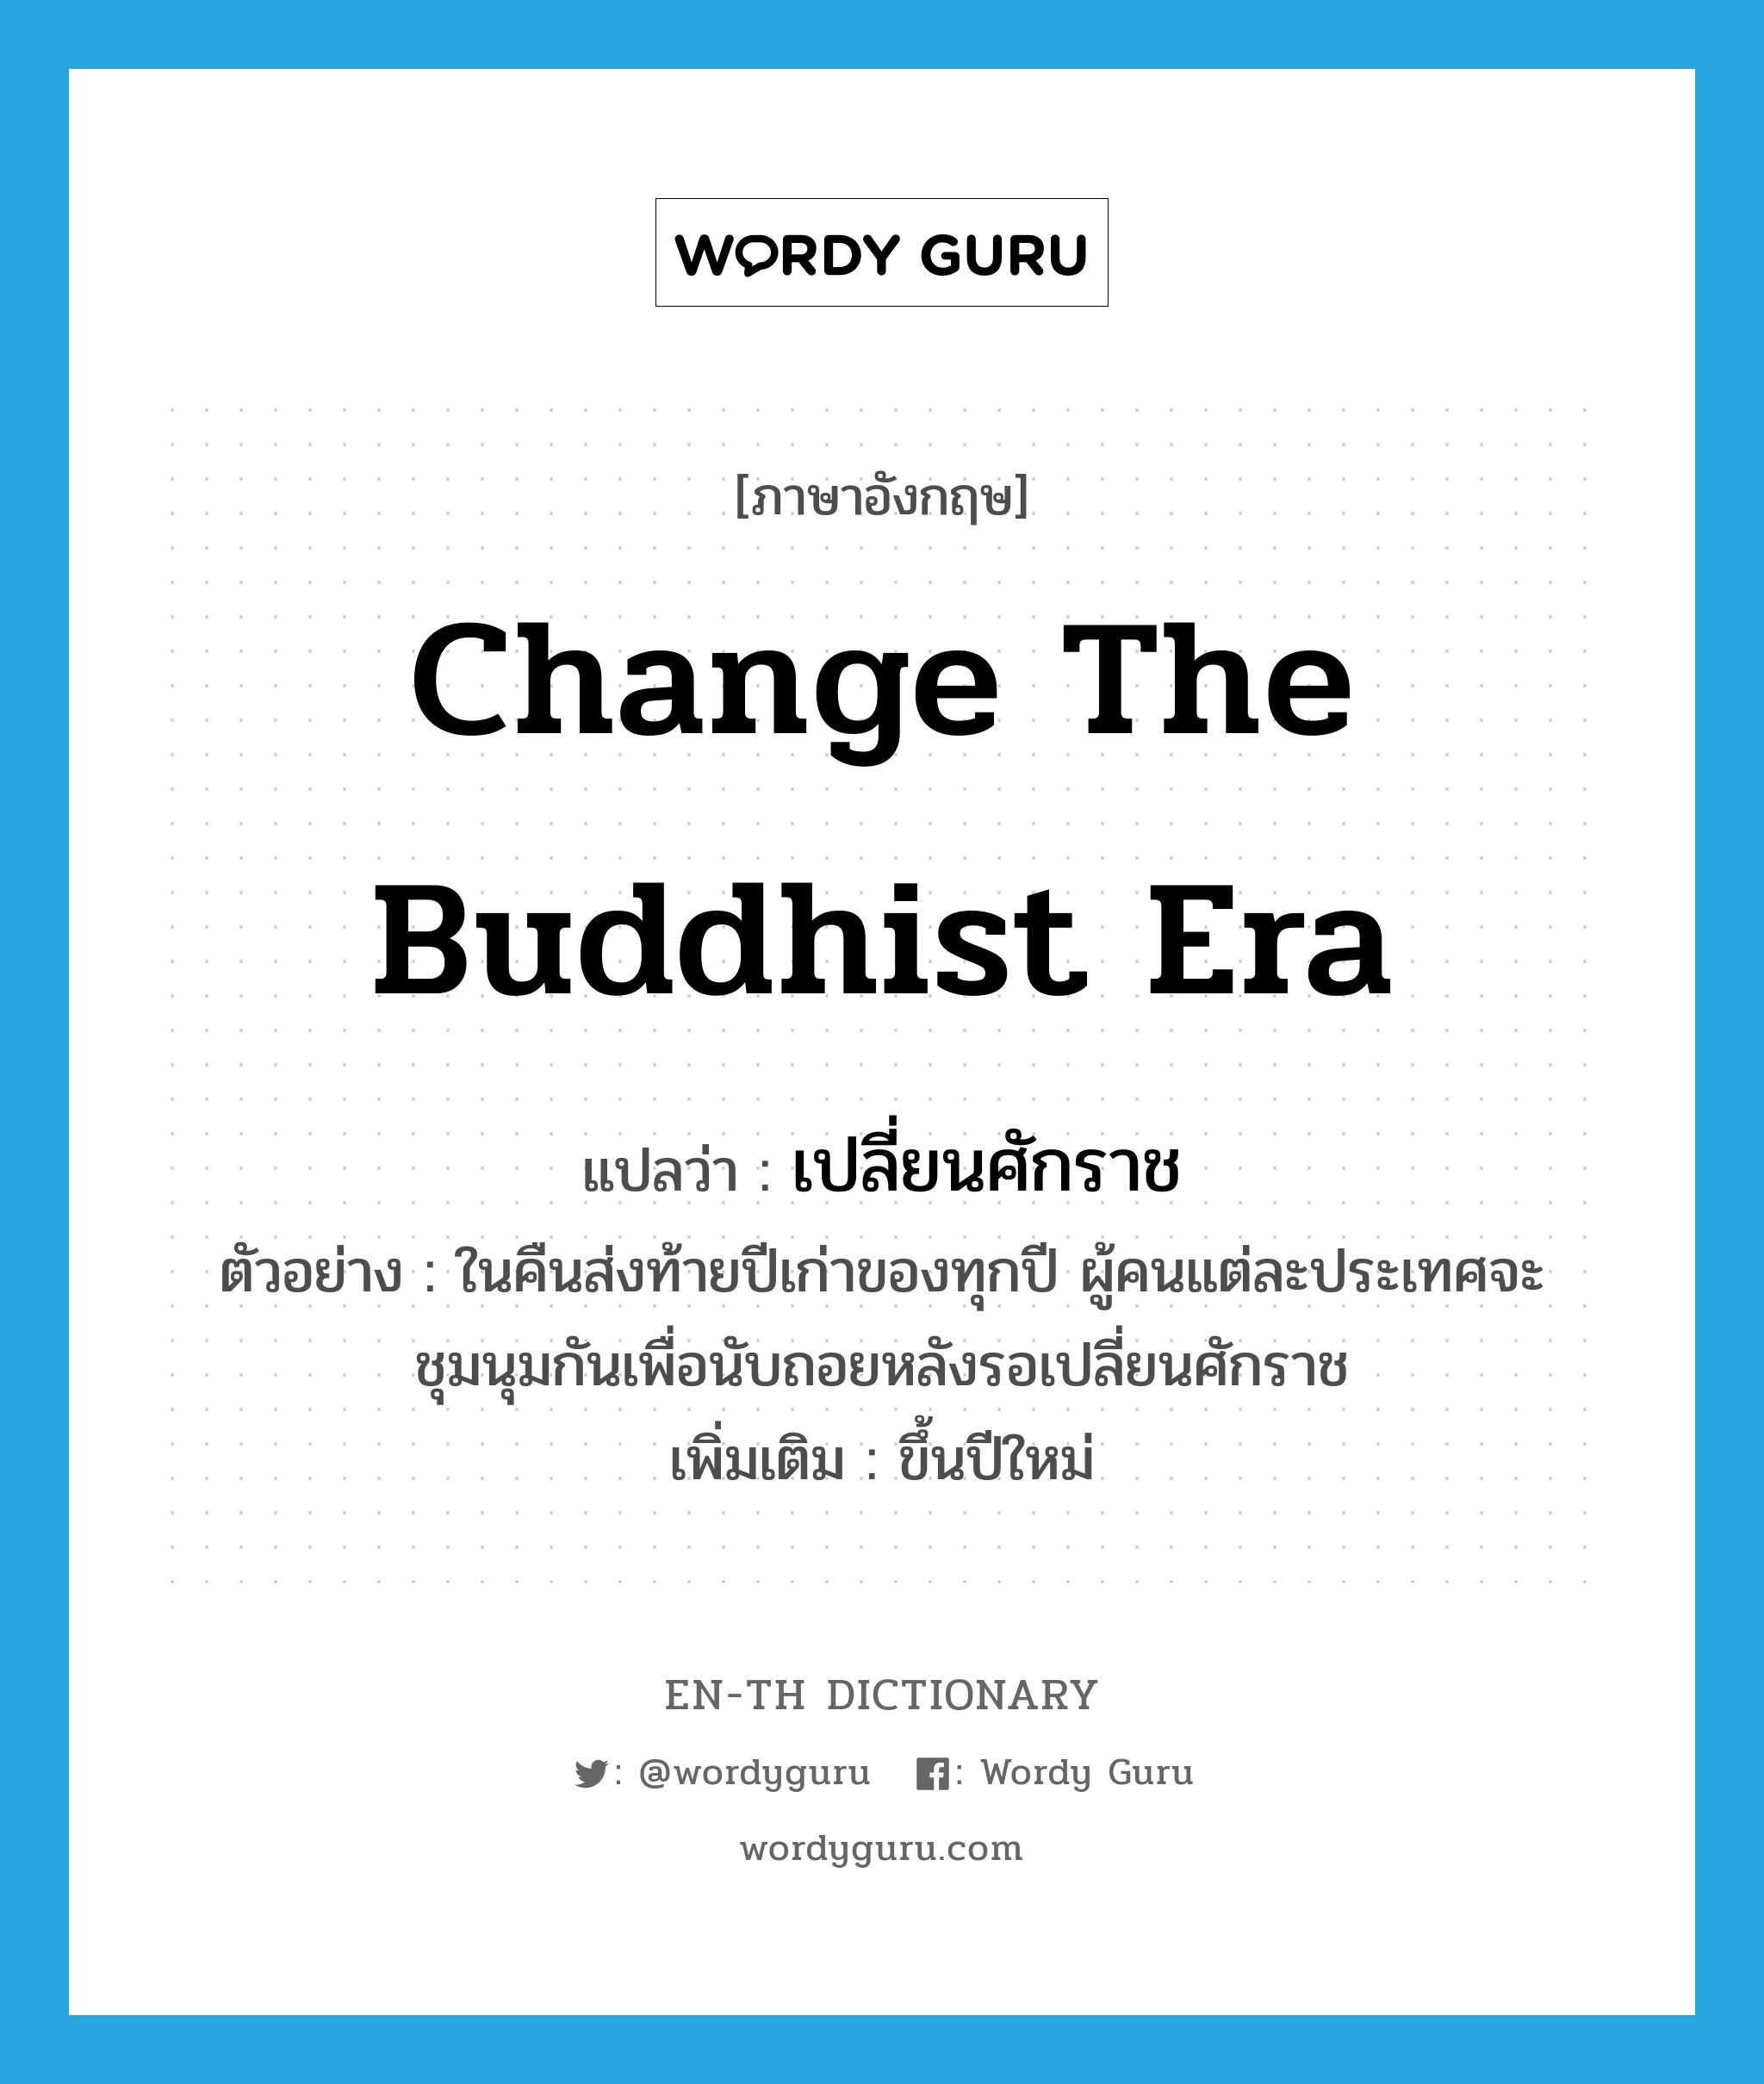 change the Buddhist era แปลว่า?, คำศัพท์ภาษาอังกฤษ change the Buddhist era แปลว่า เปลี่ยนศักราช ประเภท V ตัวอย่าง ในคืนส่งท้ายปีเก่าของทุกปี ผู้คนแต่ละประเทศจะชุมนุมกันเพื่อนับถอยหลังรอเปลี่ยนศักราช เพิ่มเติม ขึ้นปีใหม่ หมวด V